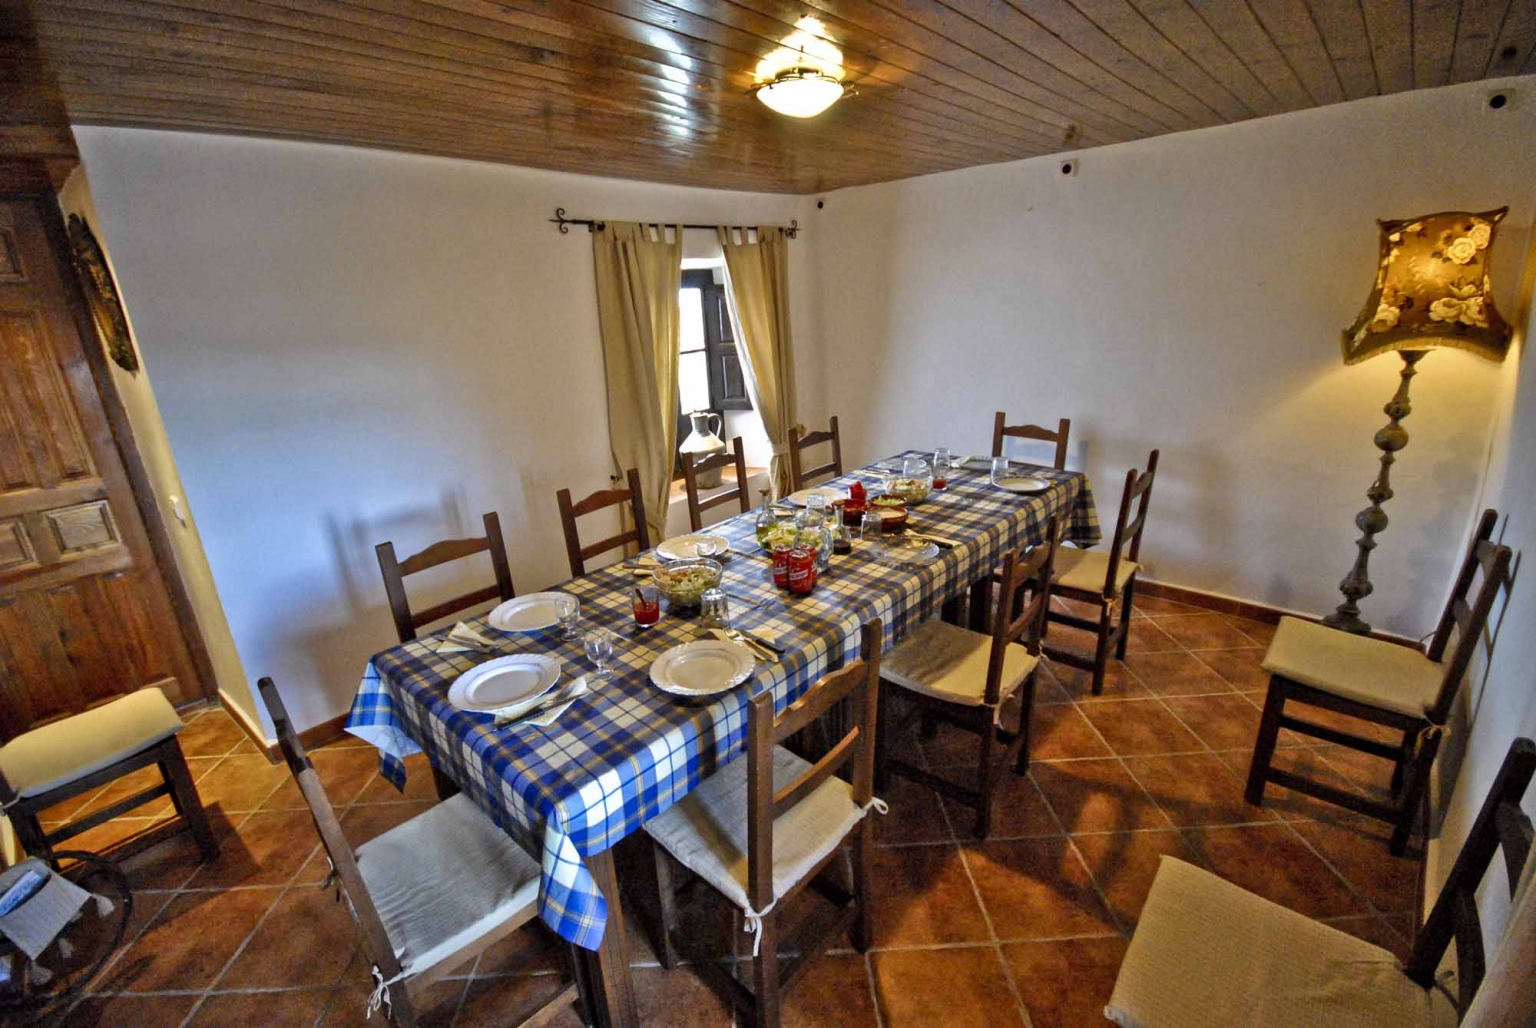 Comedor de uso común, dentro del salón principal de los Apartamentos Turísticos Cortijo Las Monjas, ubicado al Sur de Andalucía, Periana, provincia de Málaga, interior de la Costa del Sol. Alta Axarquía